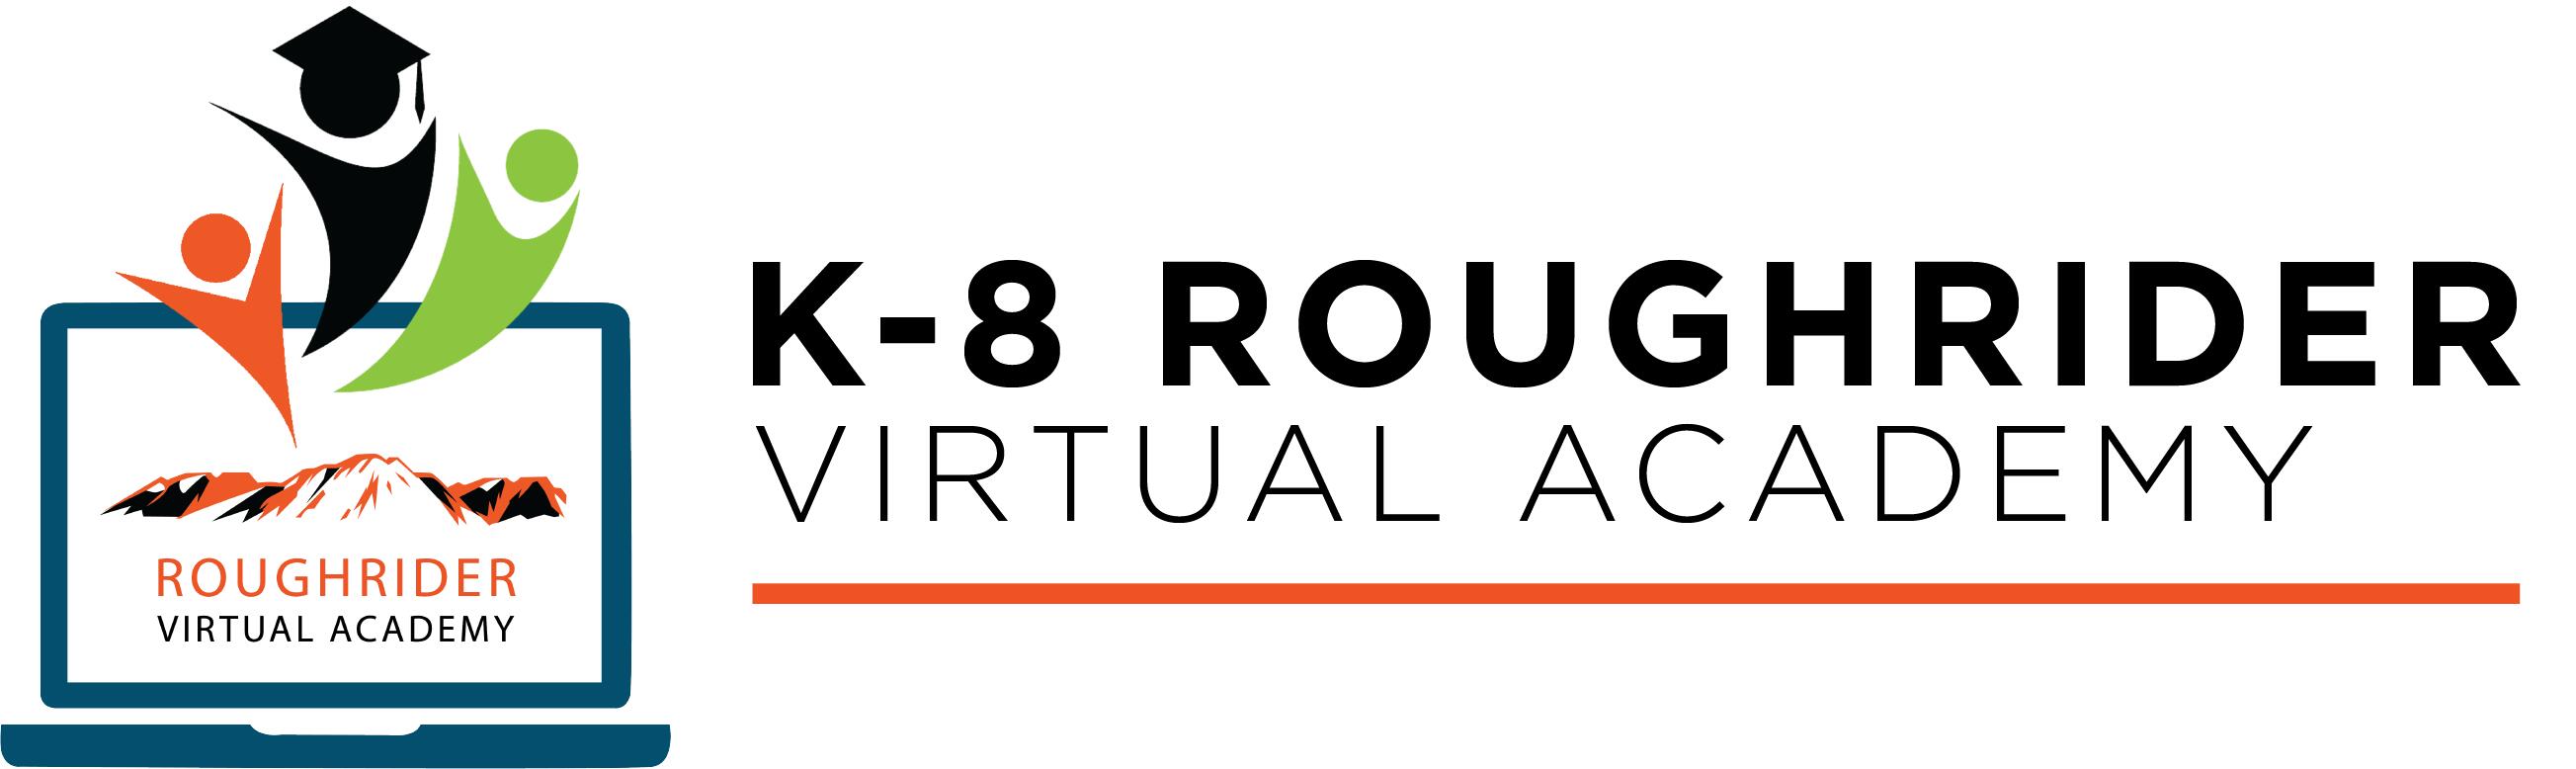 K-8 Roughrider Virtual Academy